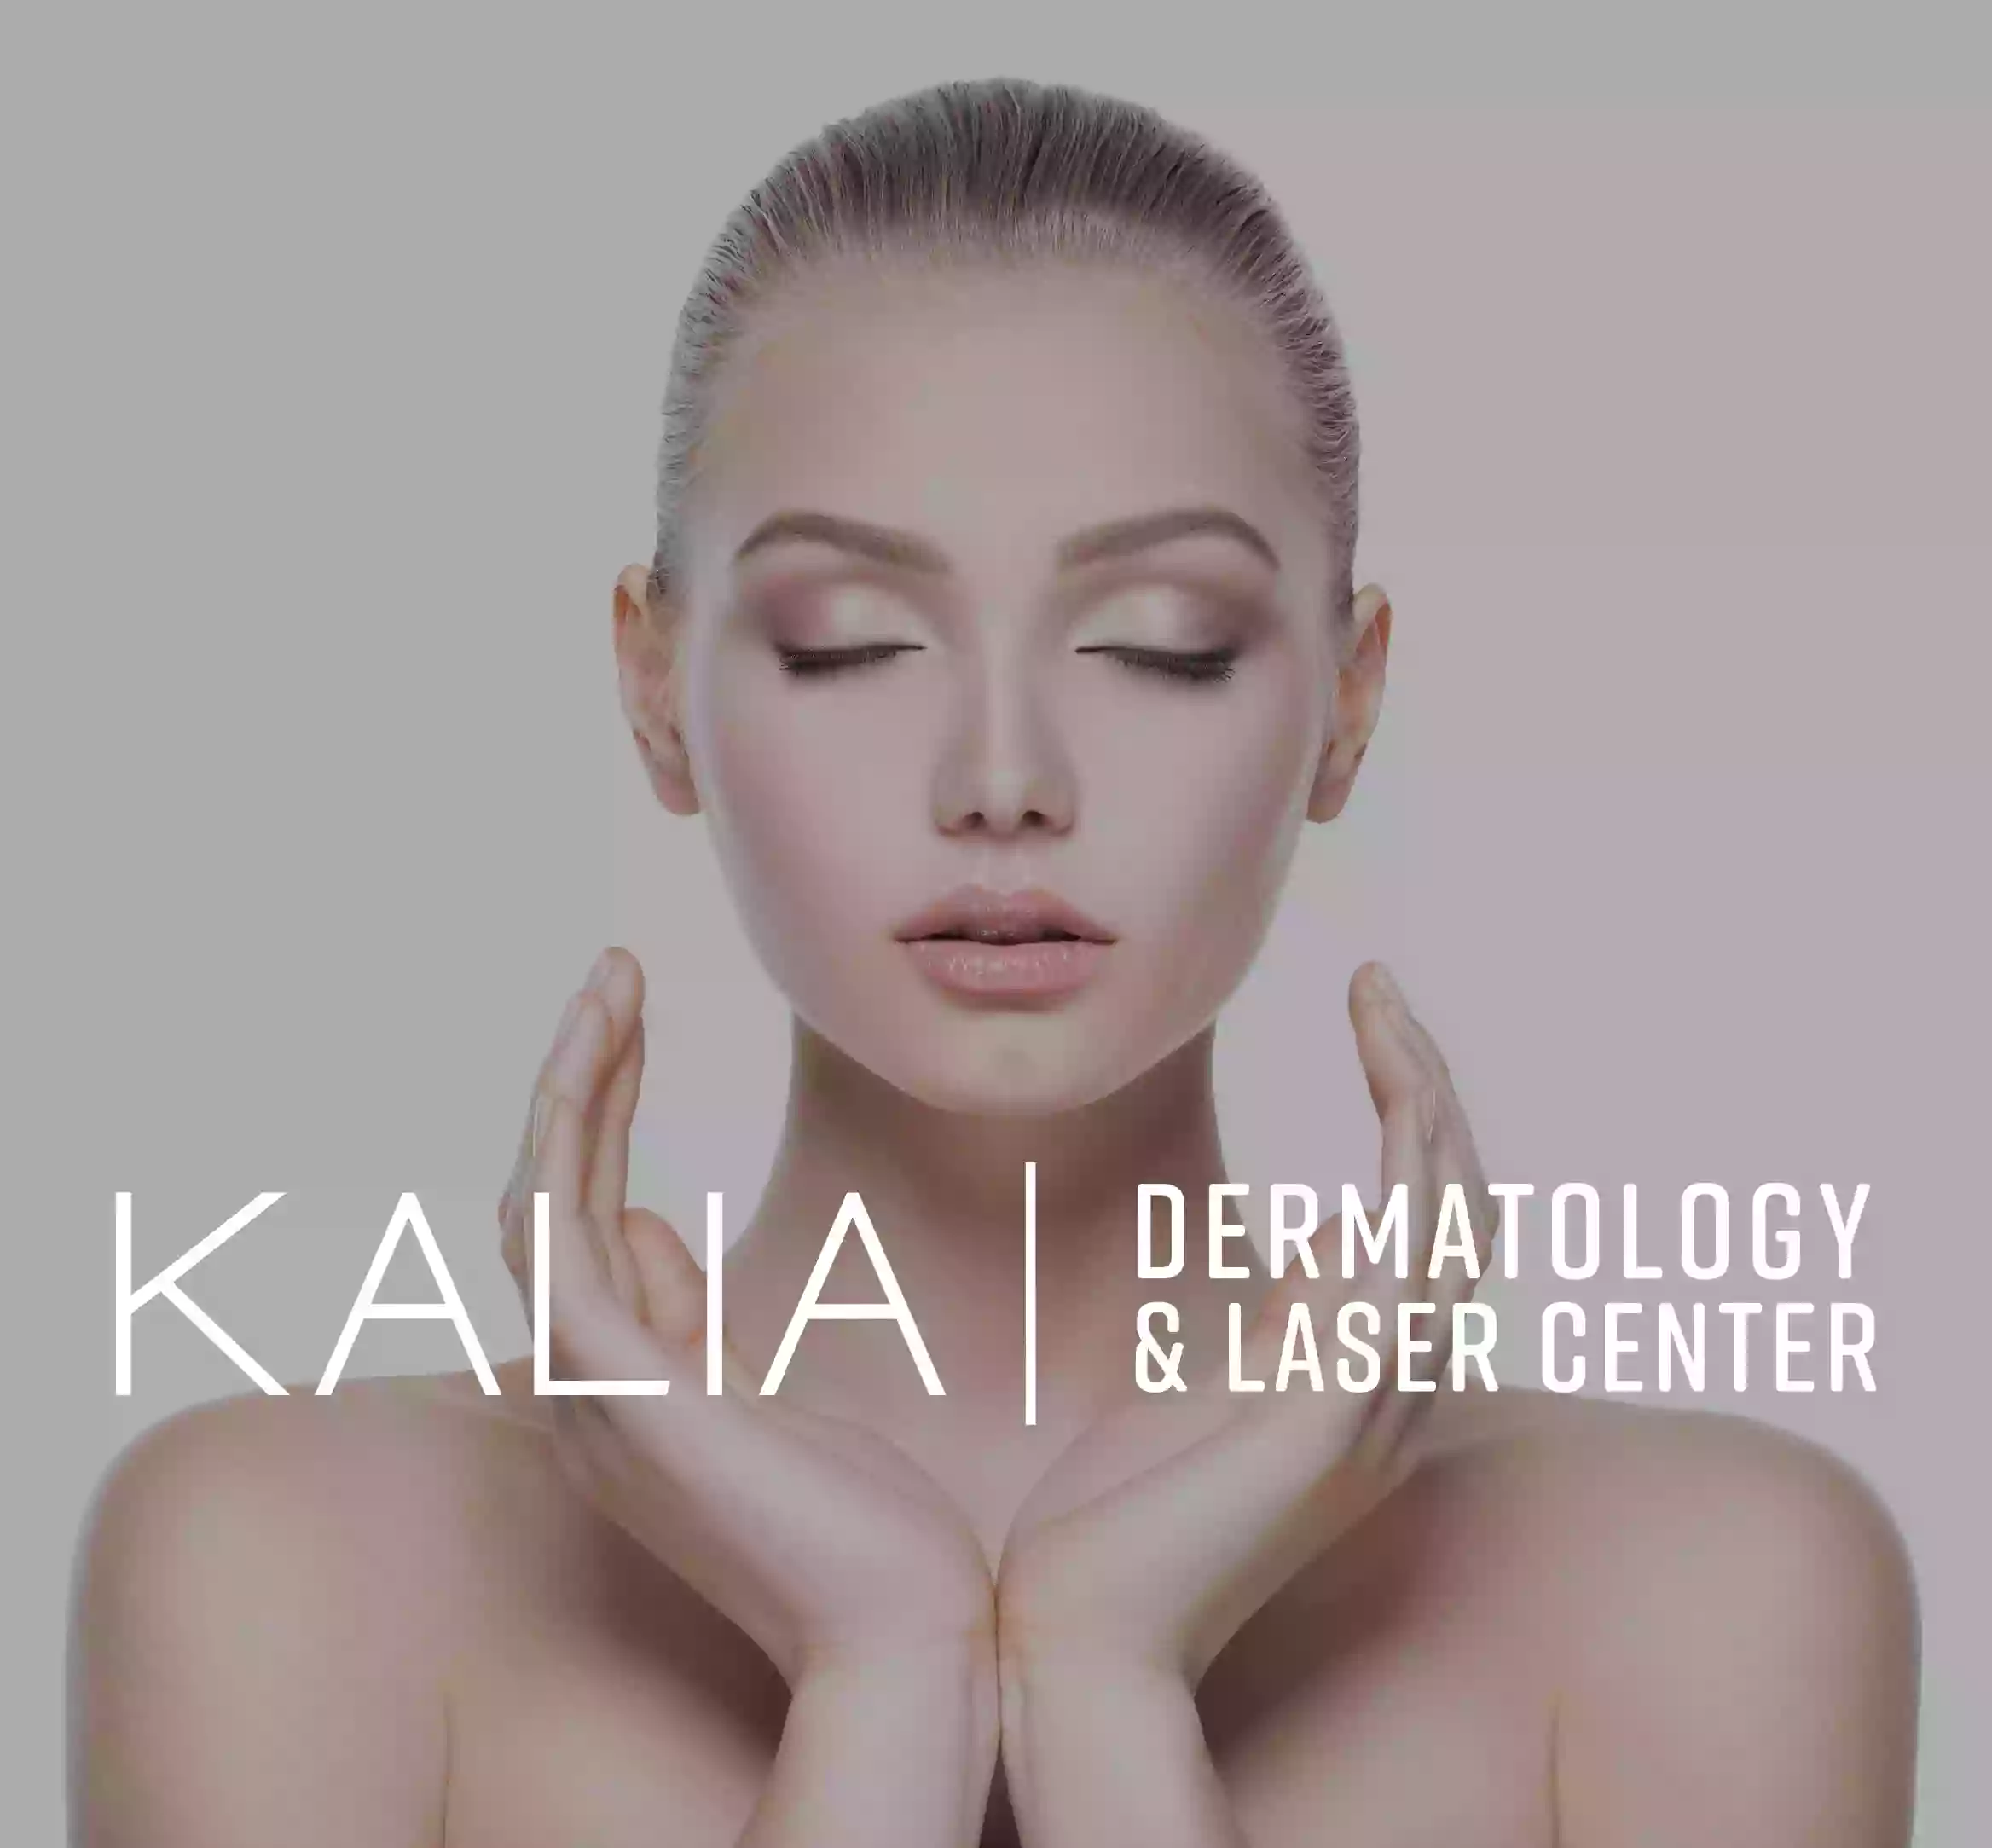 Kalia Dermatology & Laser